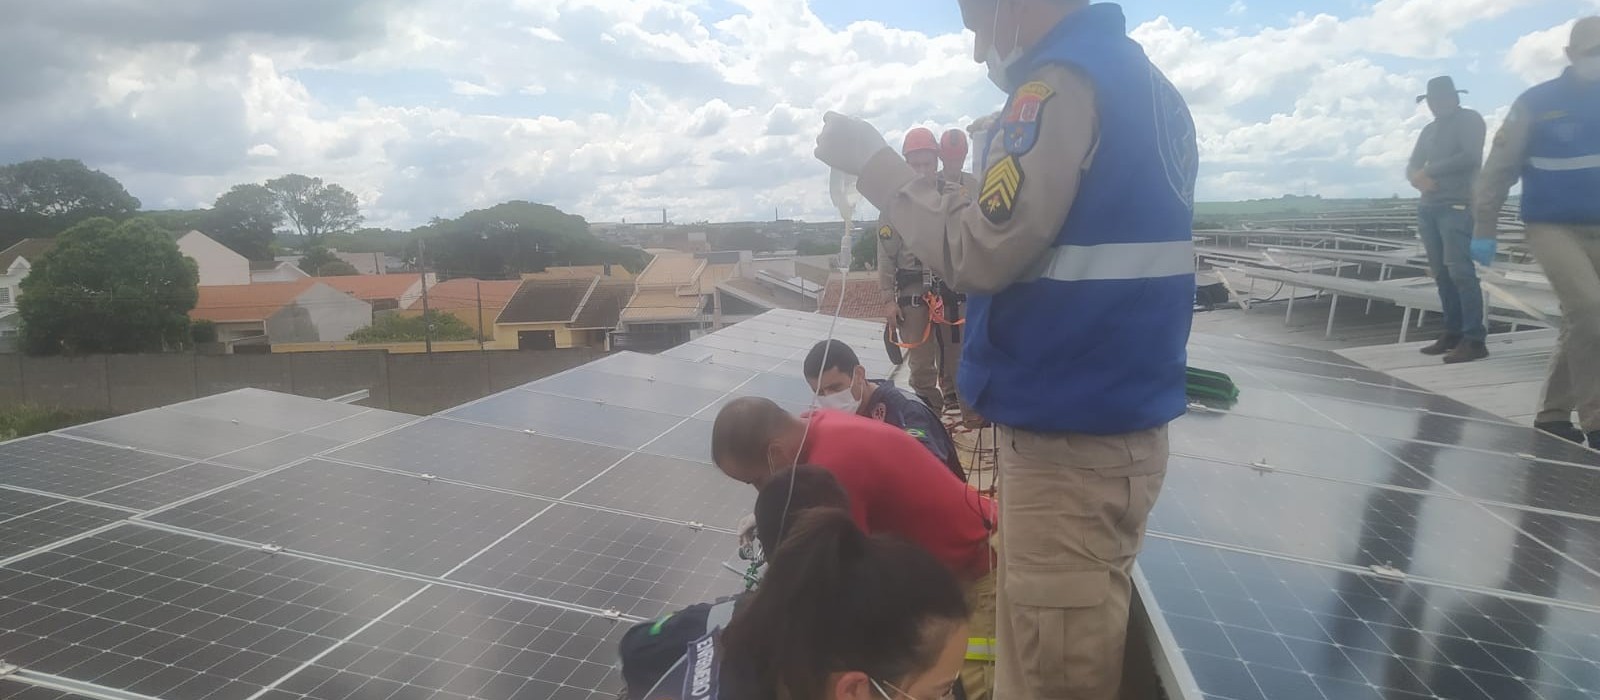 Trabalhador morre eletrocutado enquanto fazia instalação de placas solares